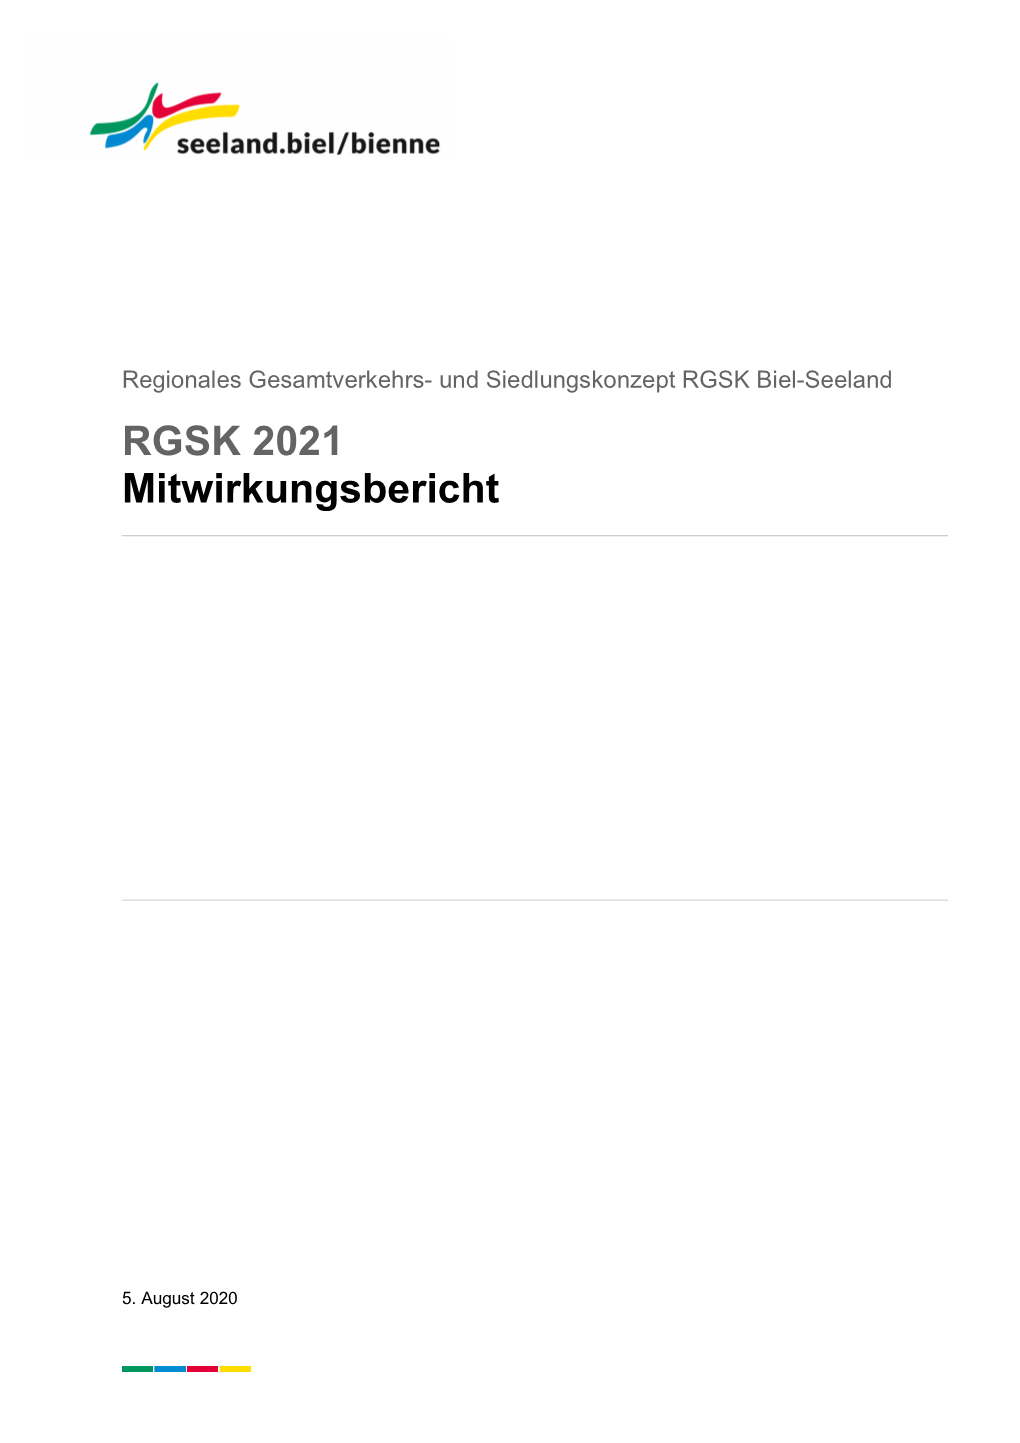 RGSK 2021 Mitwirkungsbericht